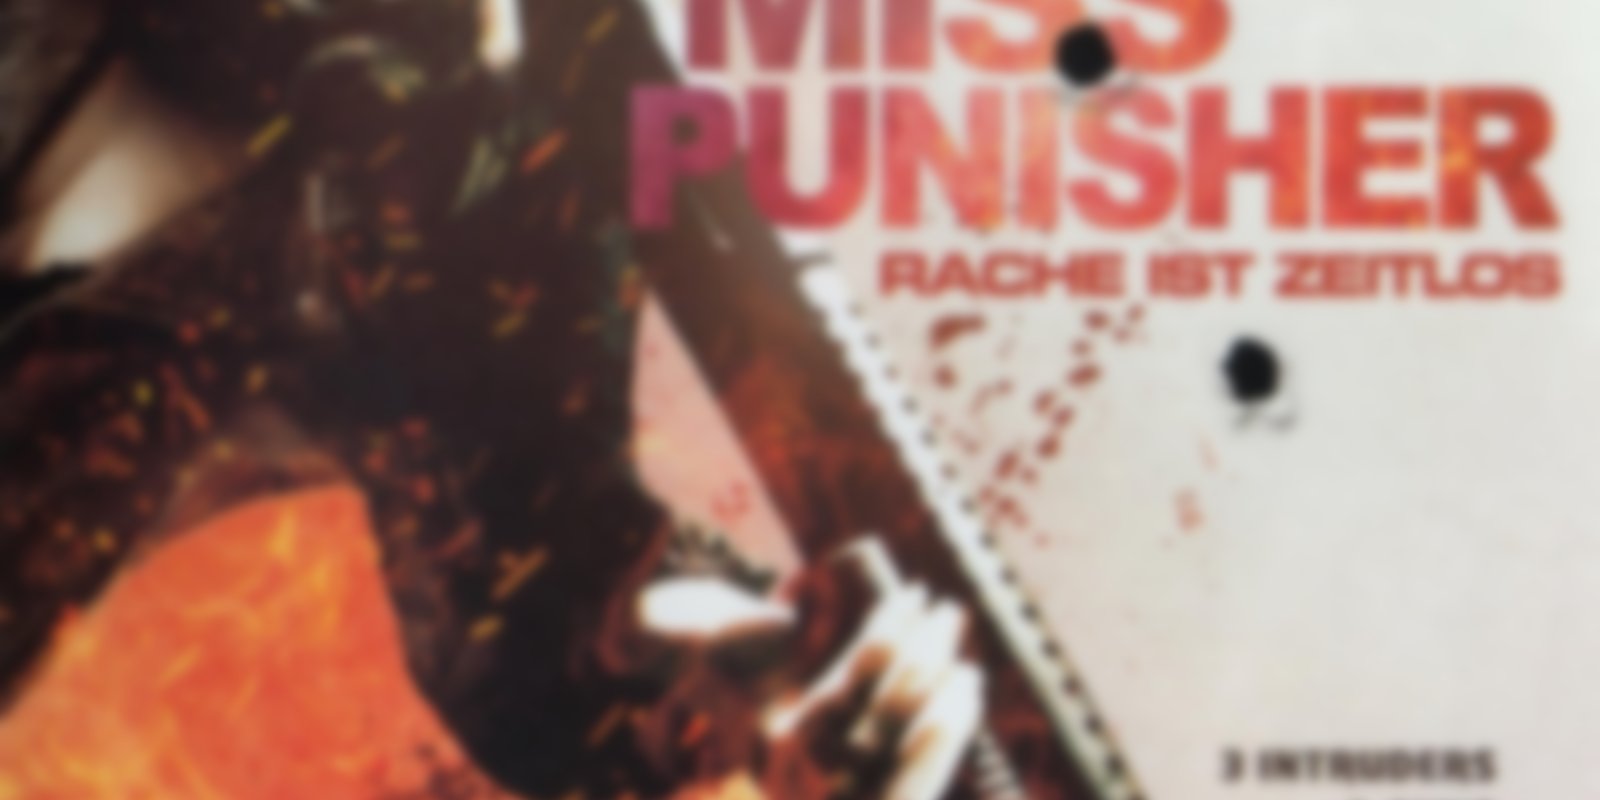 Miss Punisher